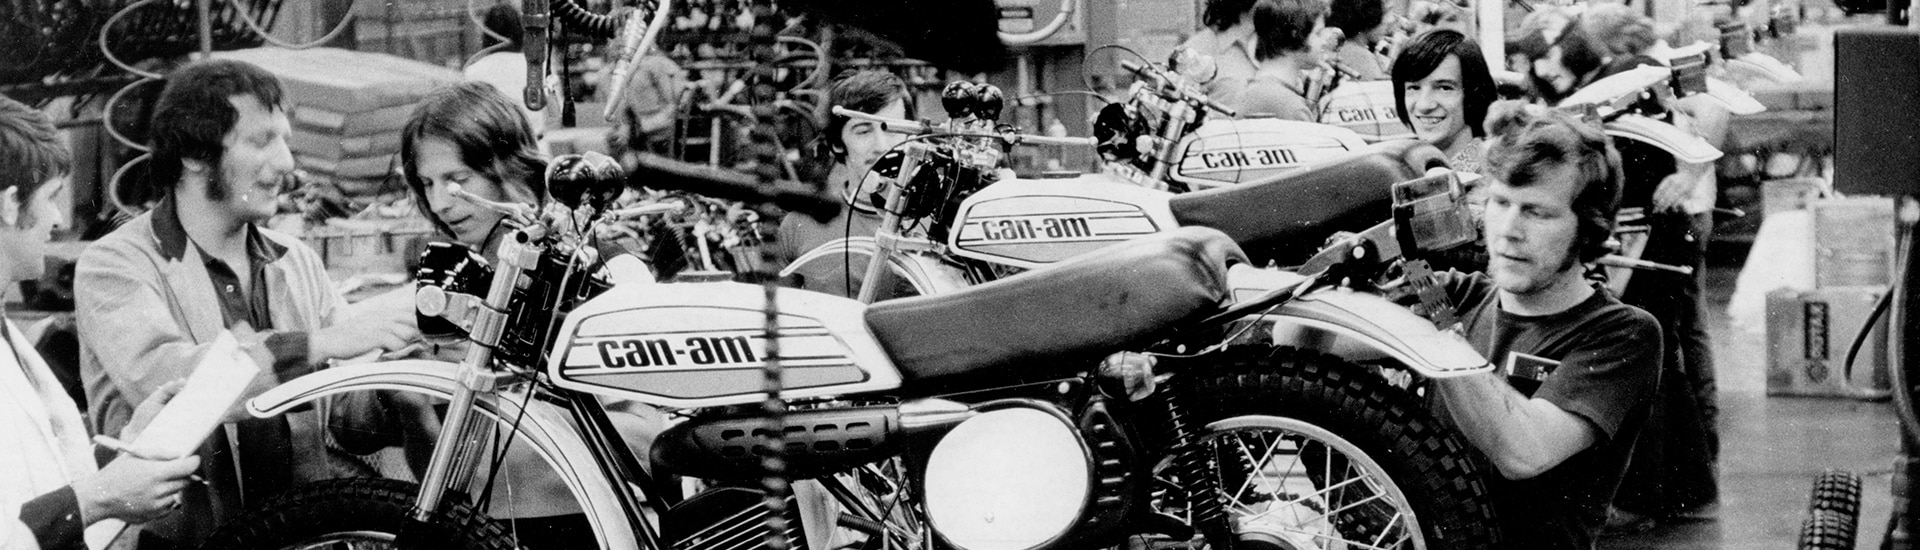 Des motos Can-Am examinées suite à leur production